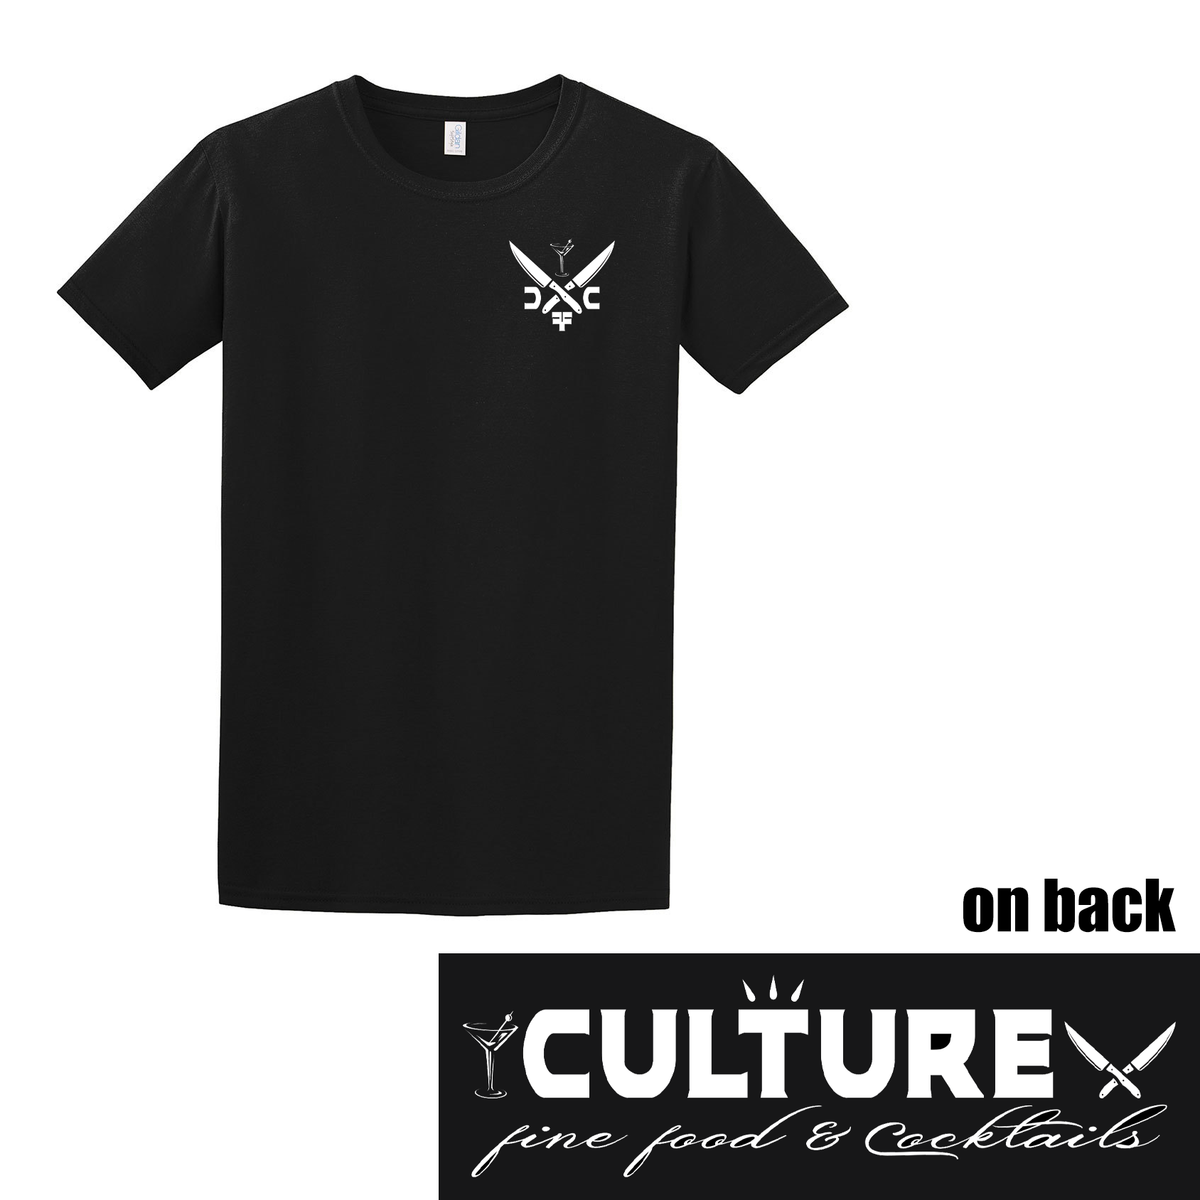 Culture T-Shirt